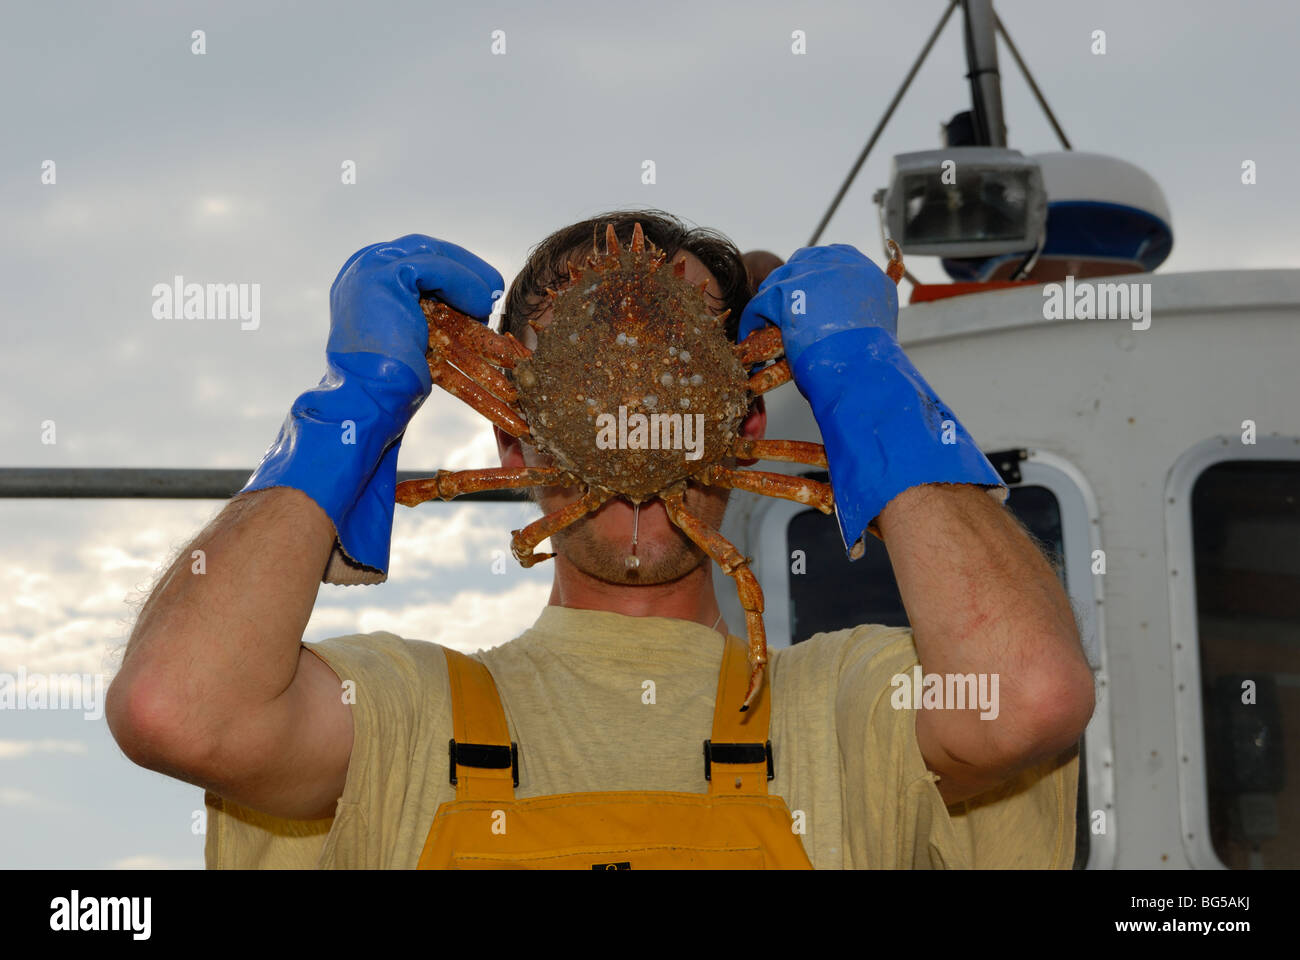 La tenue d'un pêcheur de crabe araignée, Maia squinando en face de son visage, à bord d'un bateau de pêche, le Pays de Galles Banque D'Images